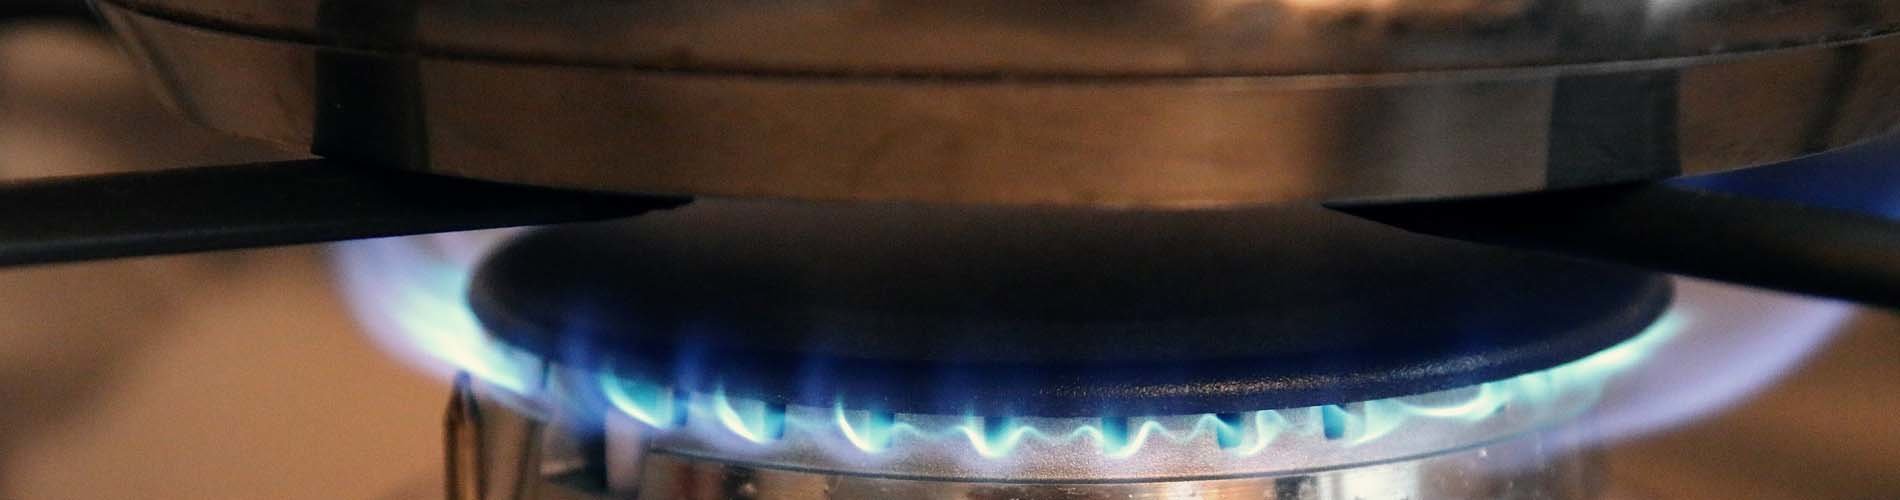 Stijgende gasprijzen: wat zijn de alternatieven voor verwarmen op gas